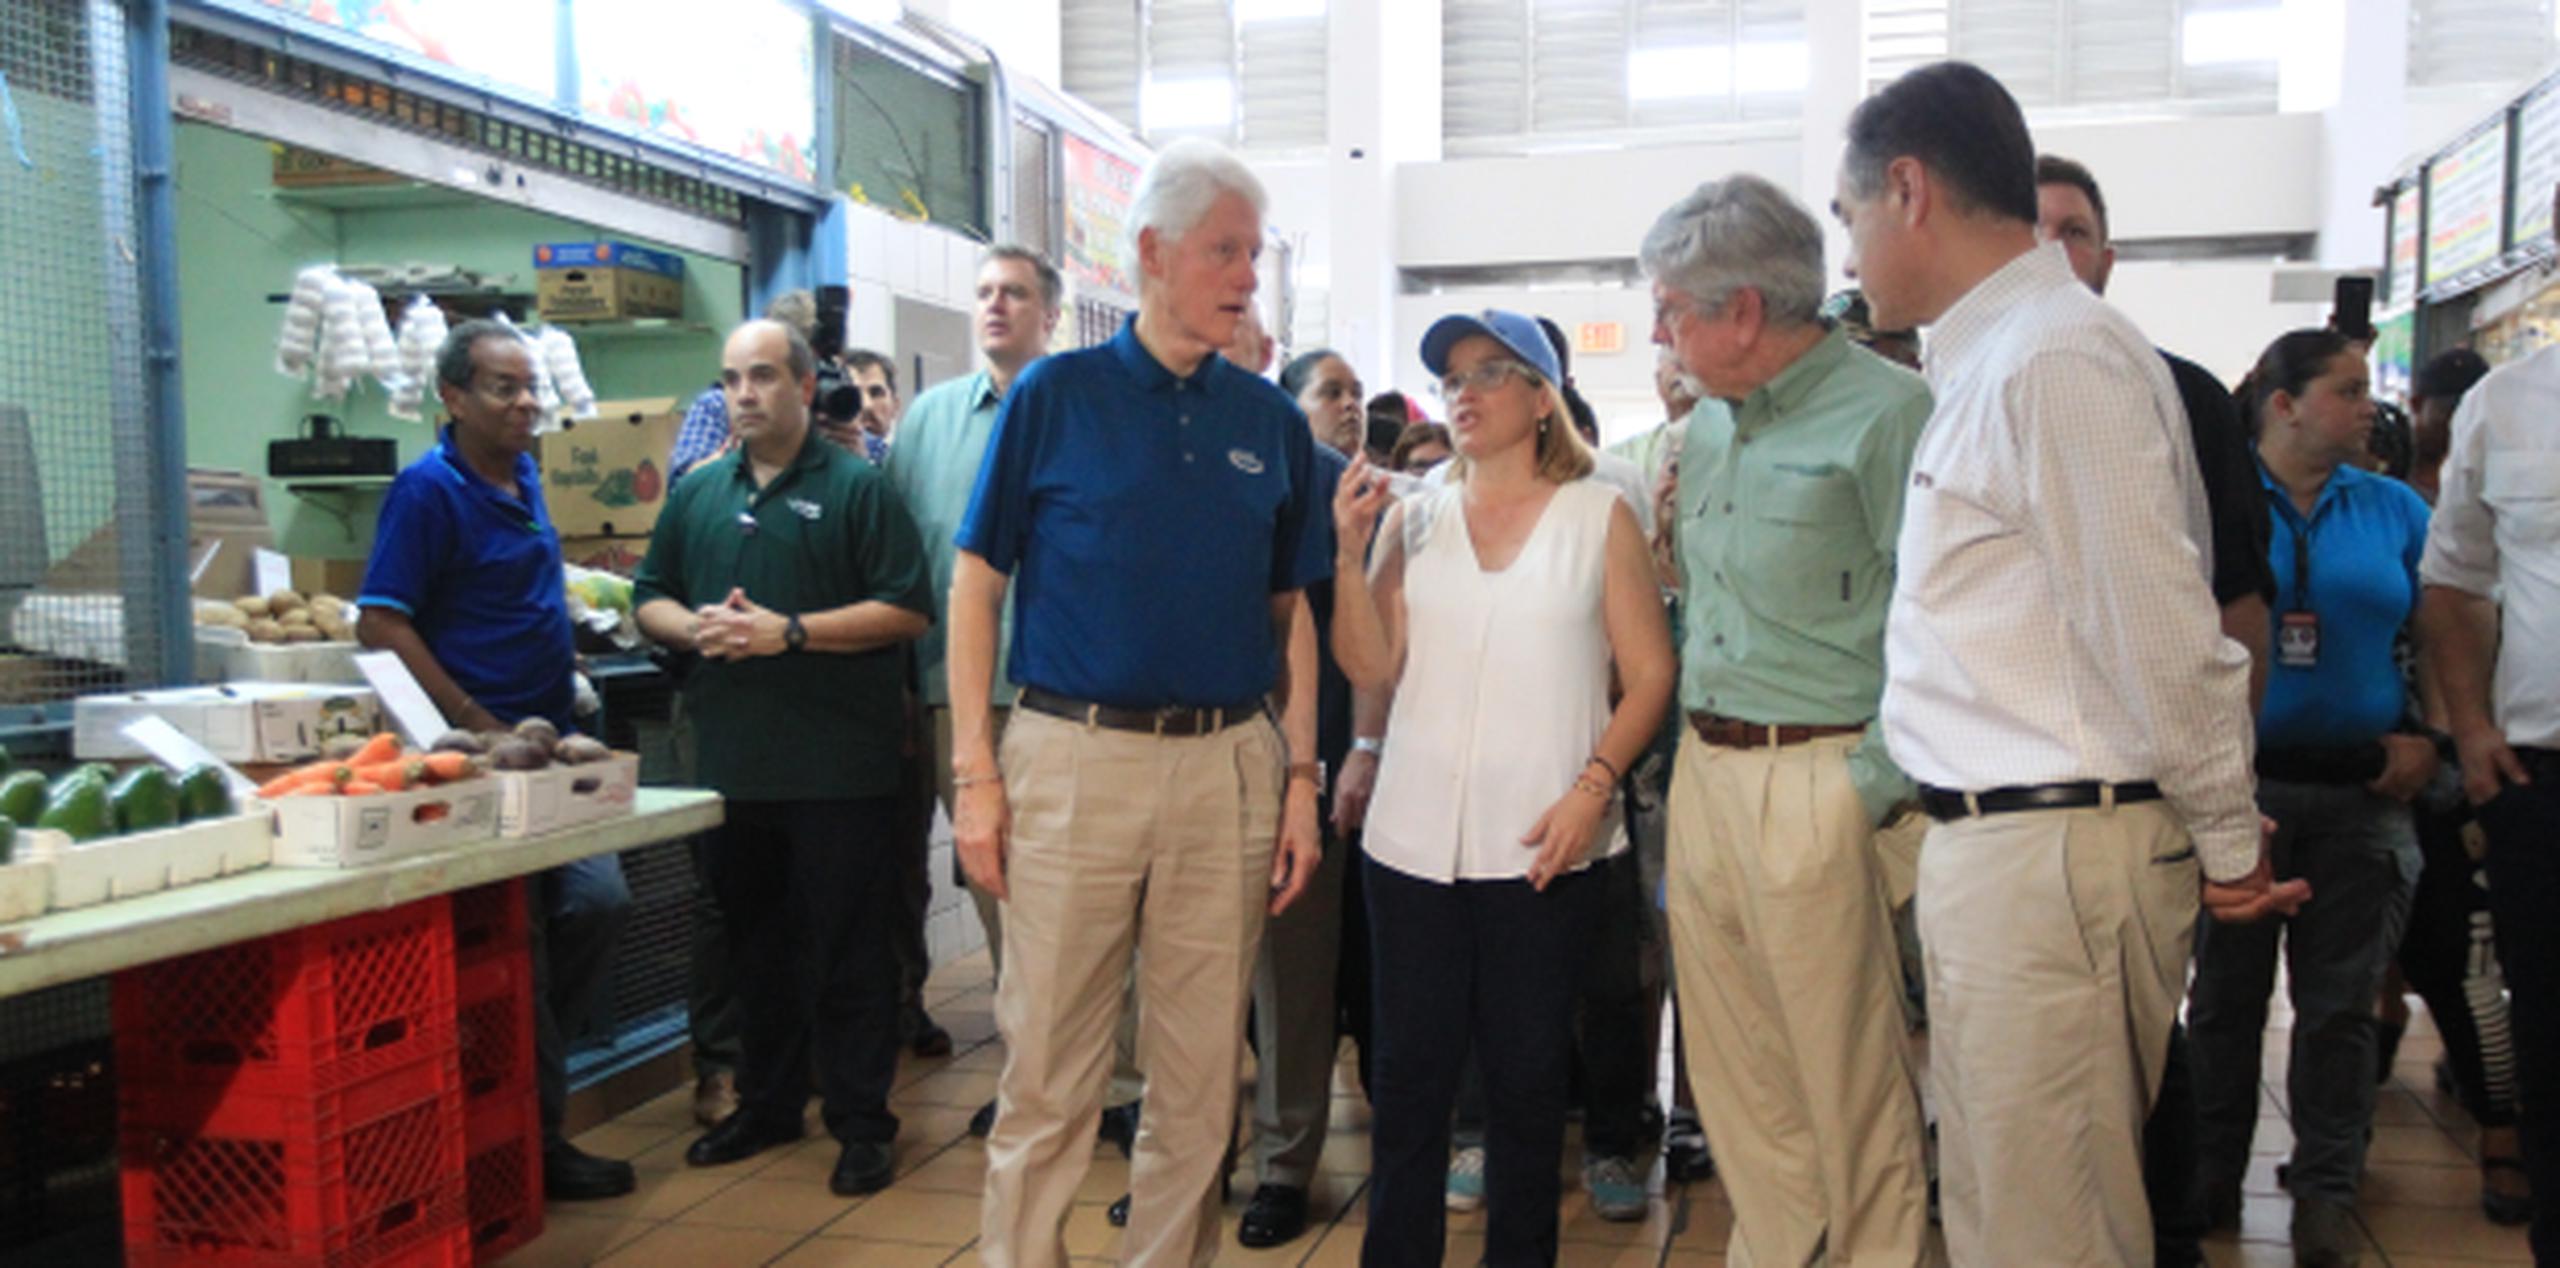 Bill Clinton visitó la Plaza del Mercado de Río Piedras, donde fue recibido por la alcaldesa Carmen Yulín Cruz. (alex.figueroa@gfrmedia.com)
